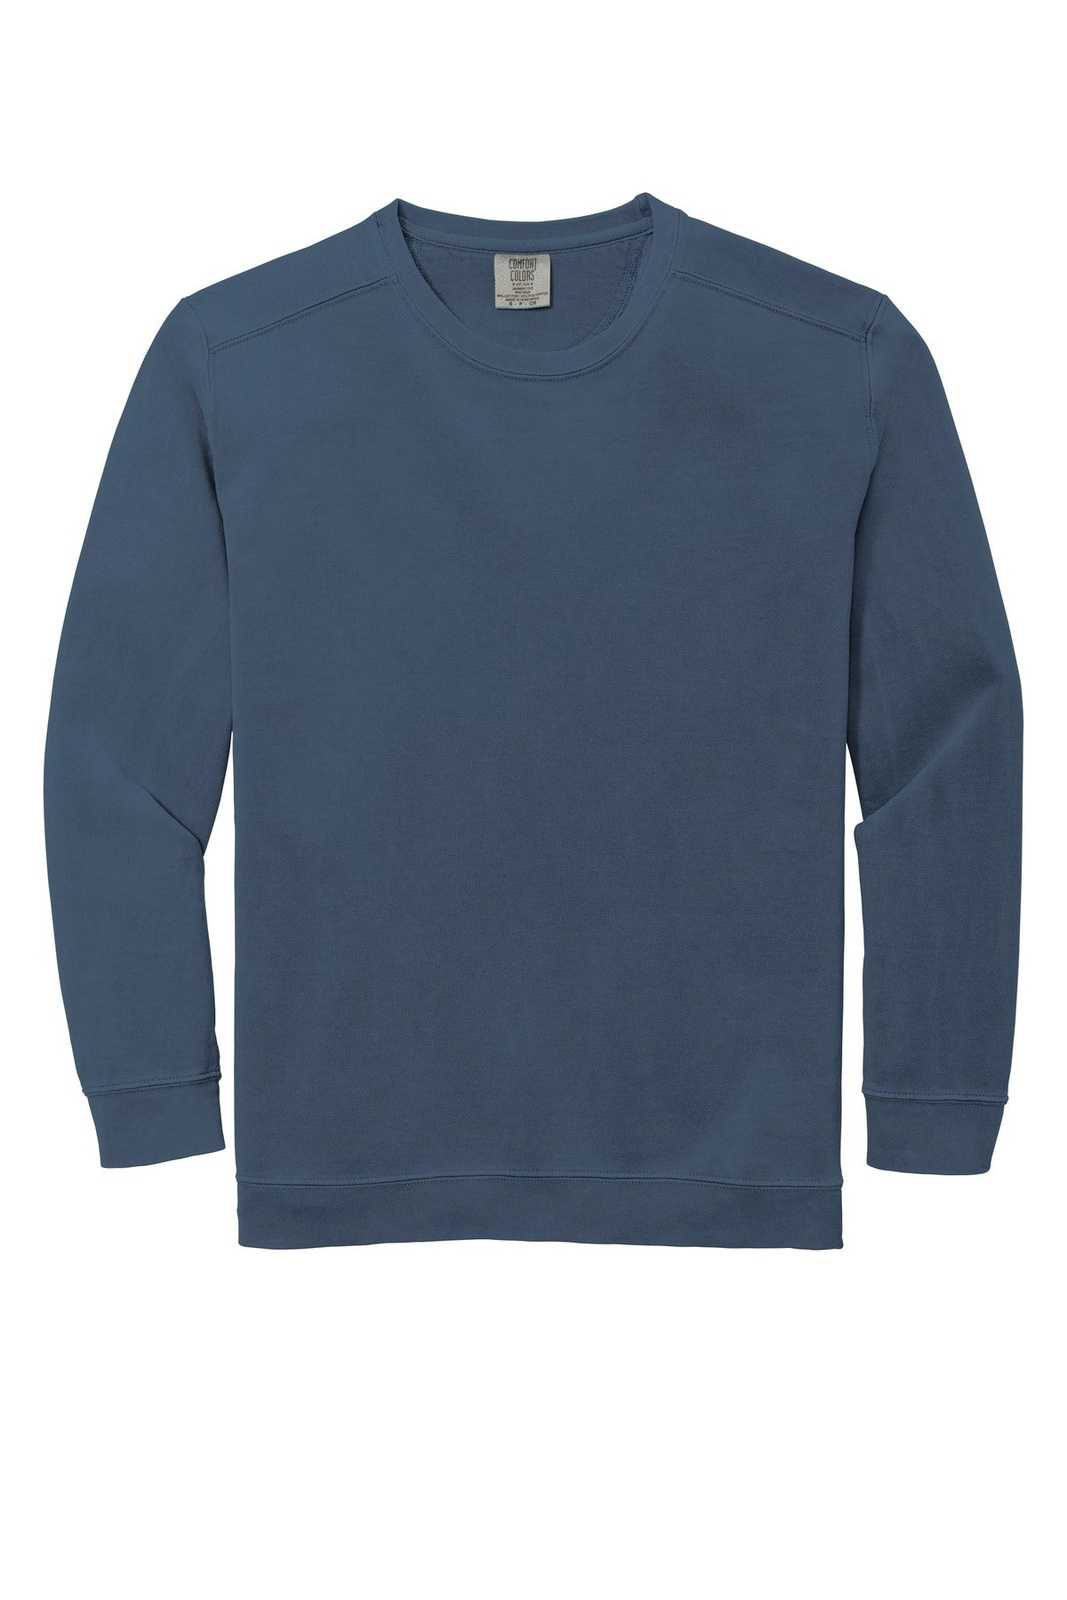 Comfort Colors 1566 Ring Spun Crewneck Sweatshirt - Blue Jean - HIT a Double